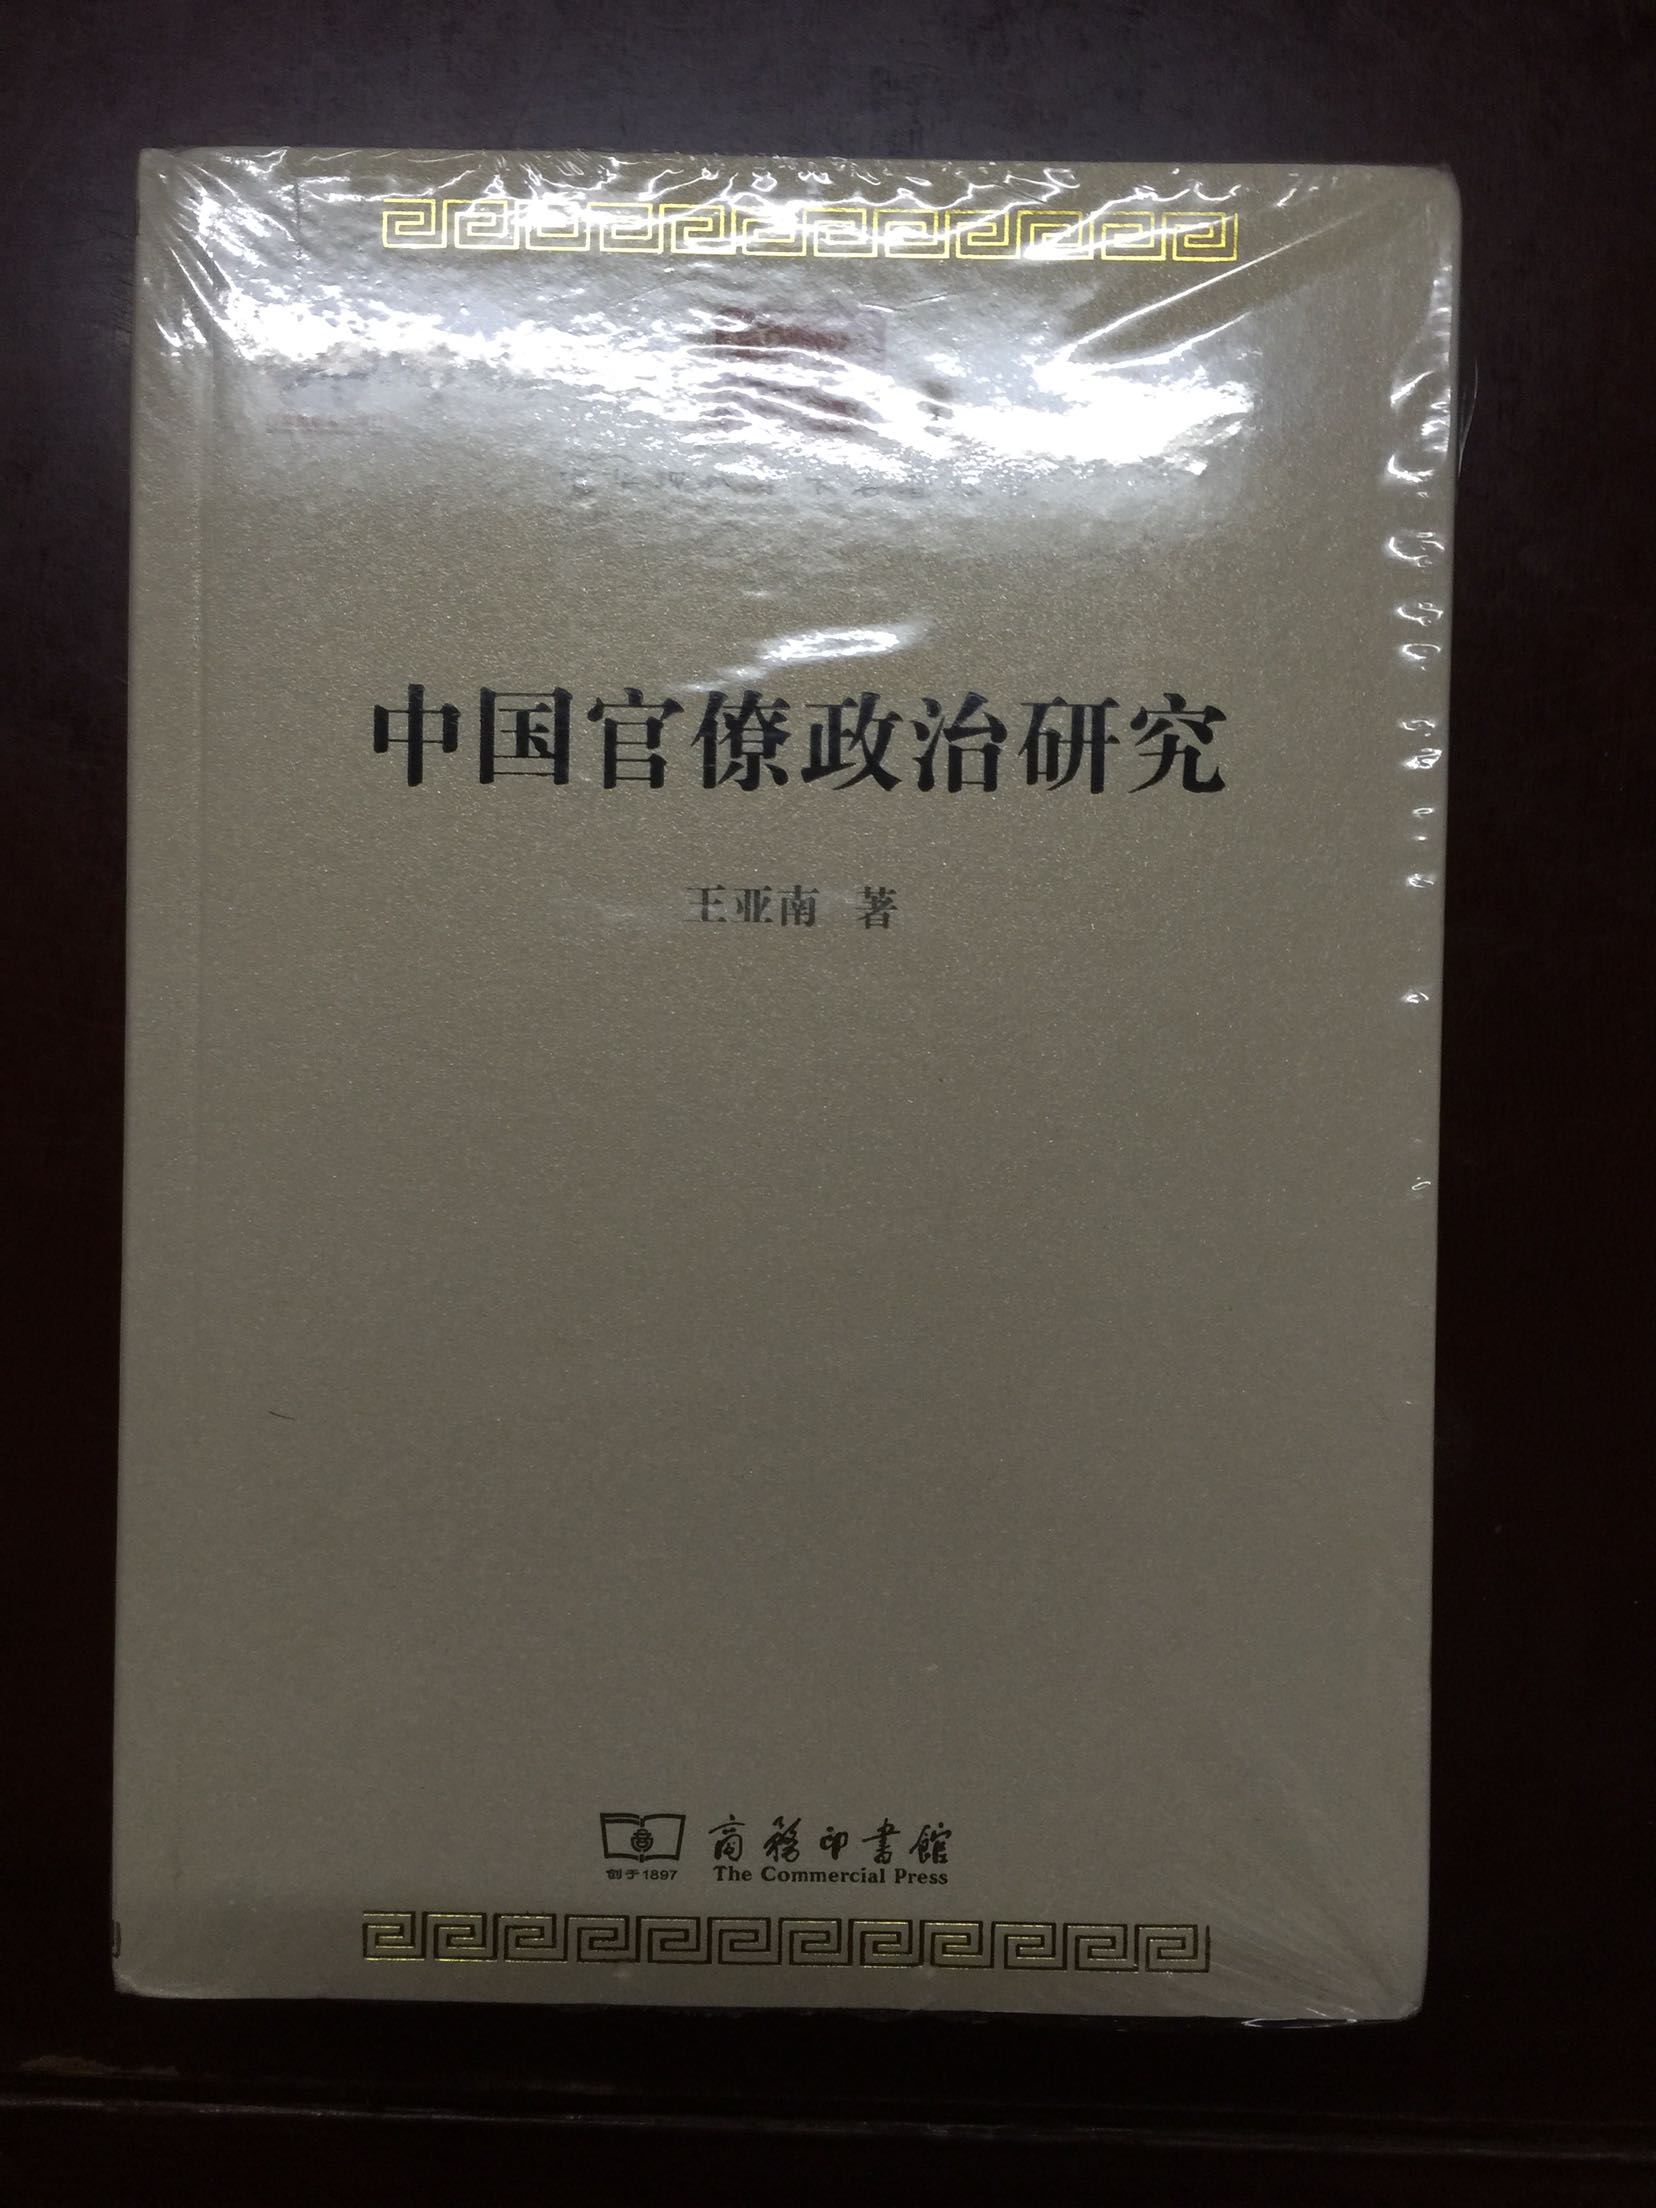 王亚南翻译了不少西方经济学作品，但没看过他本人的著作。买一本一窥究竟。书包装不错，价格公道，支持。